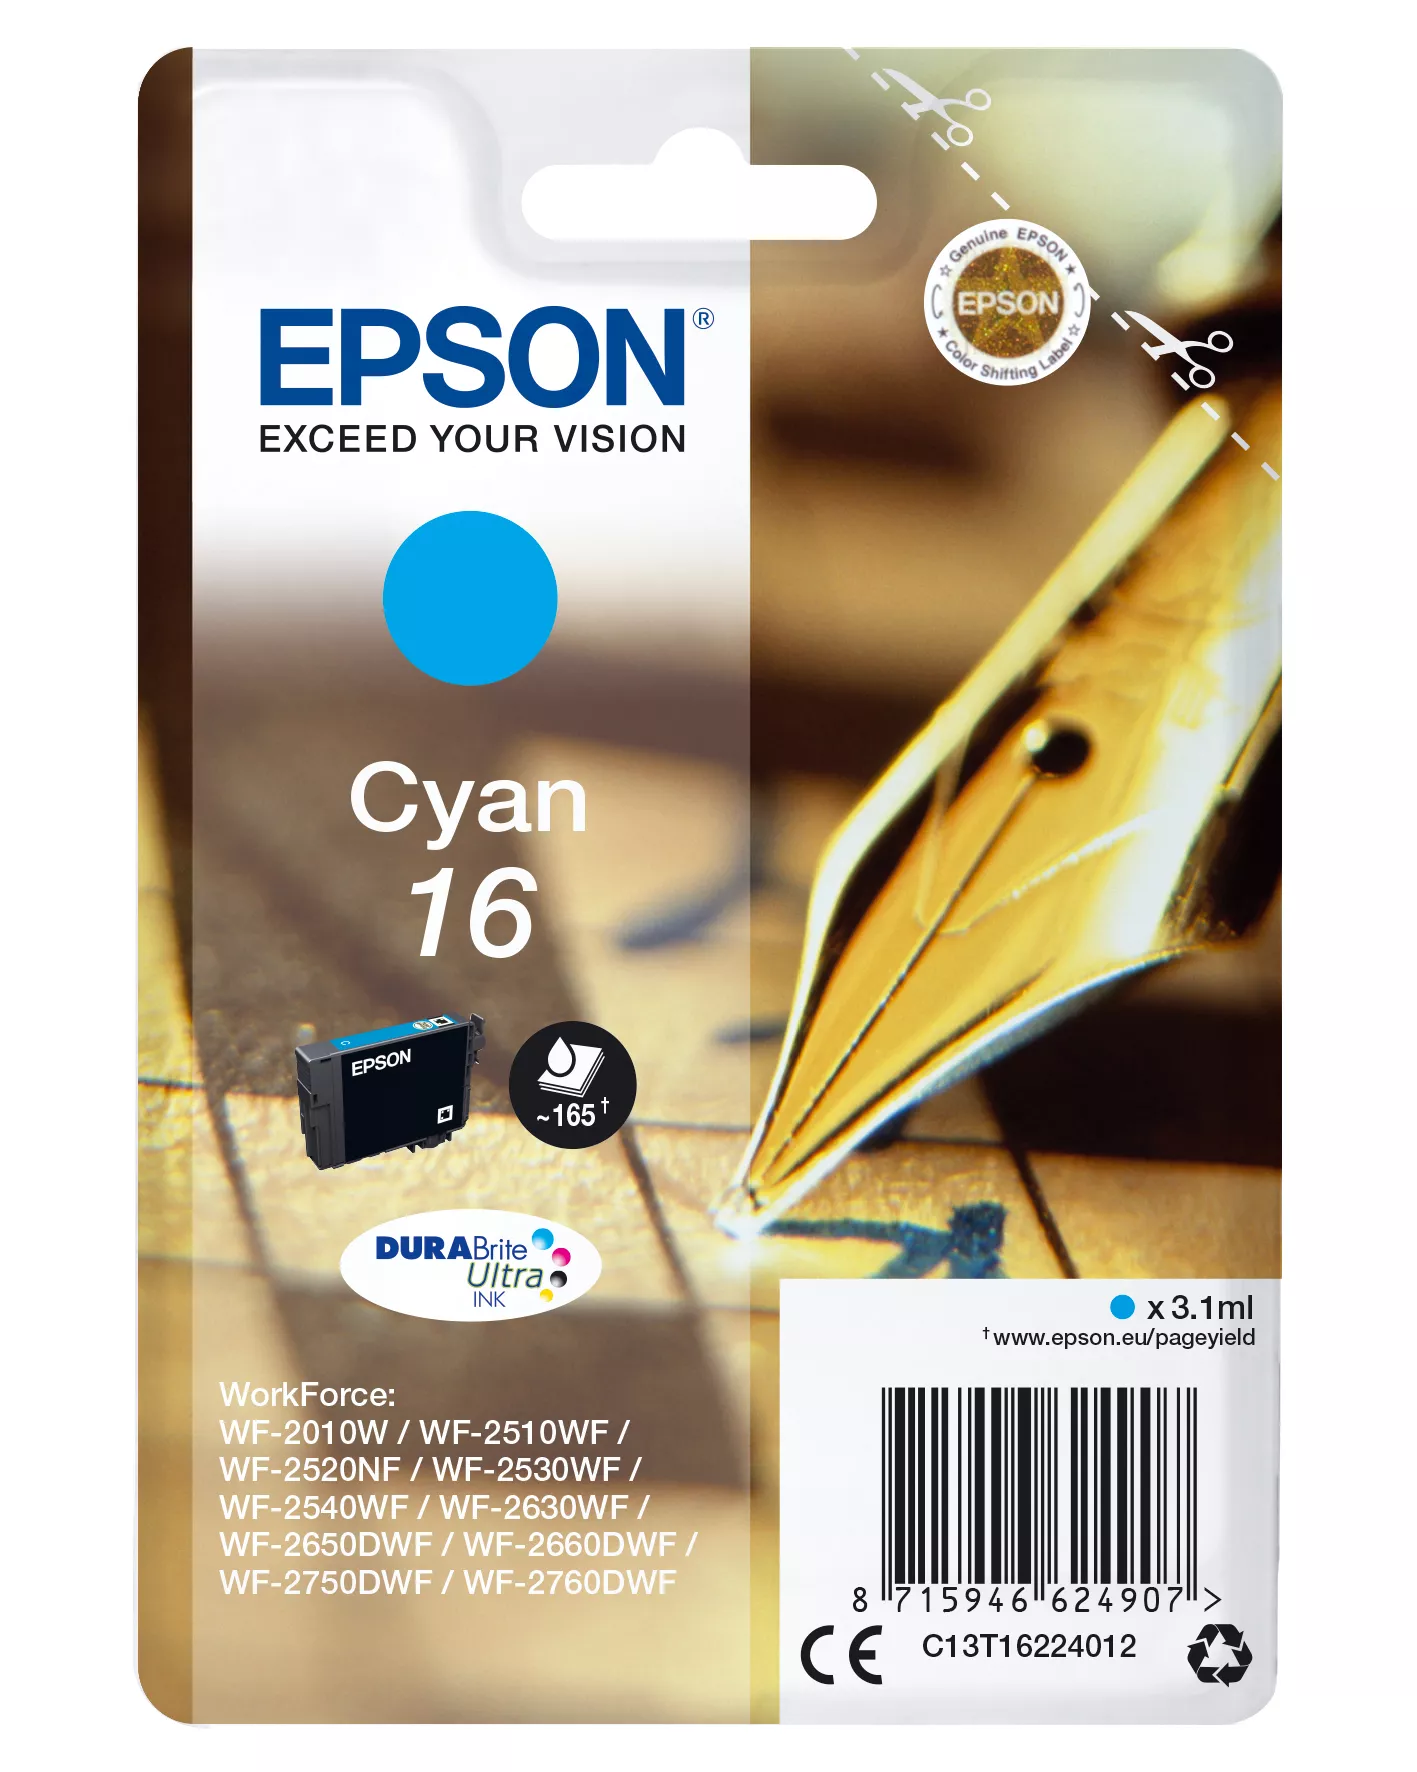 Achat EPSON 16 cartouche encre cyan capacité standard 3.1ml 165 sur hello RSE